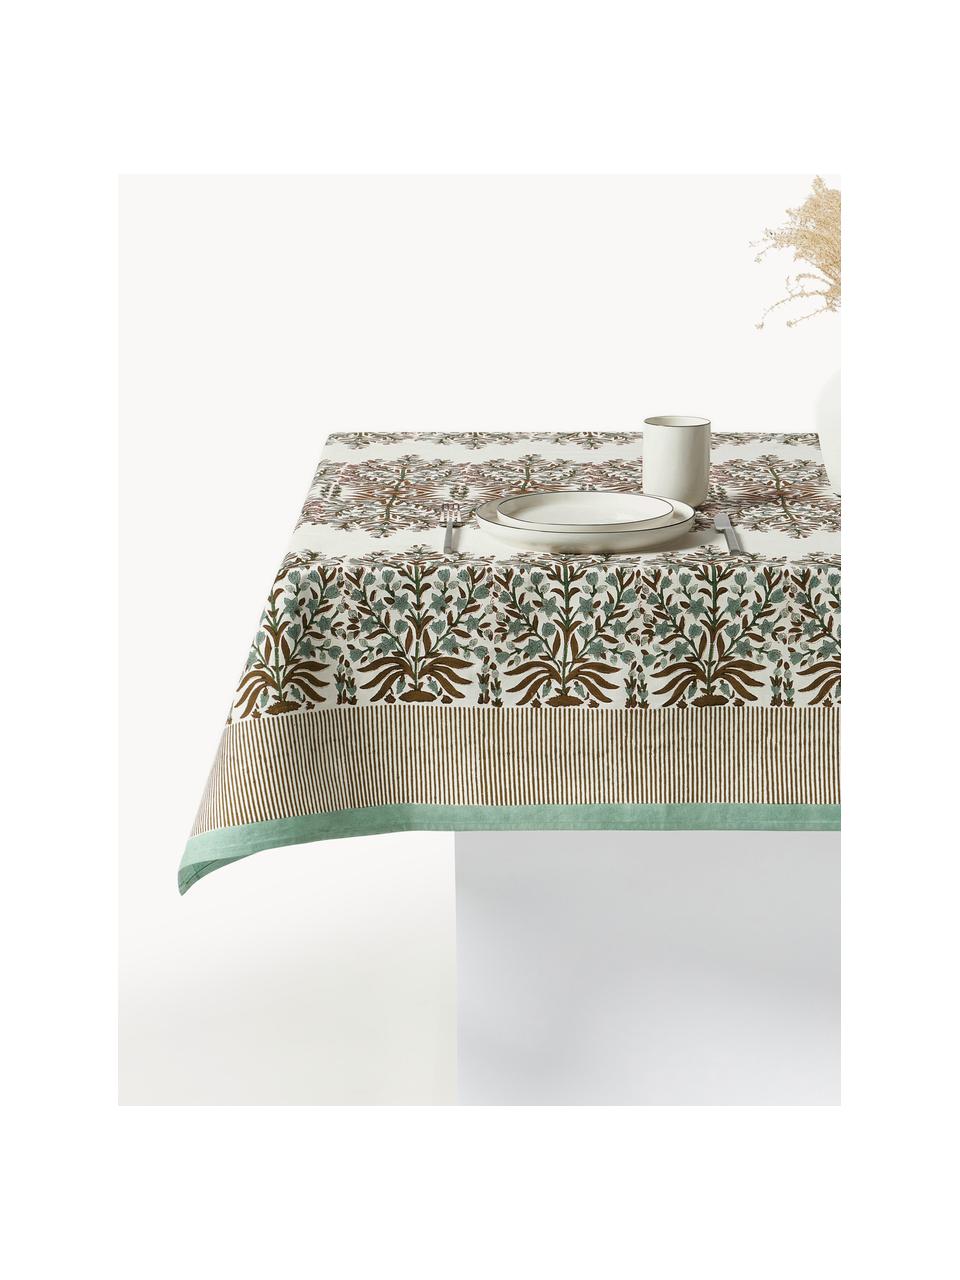 Nappe avec motif à fleurs Jasmine, 100 % coton, Vert olive, brun, blanc cassé, 6-8 personnes (larg. 150 cm x long. 250)